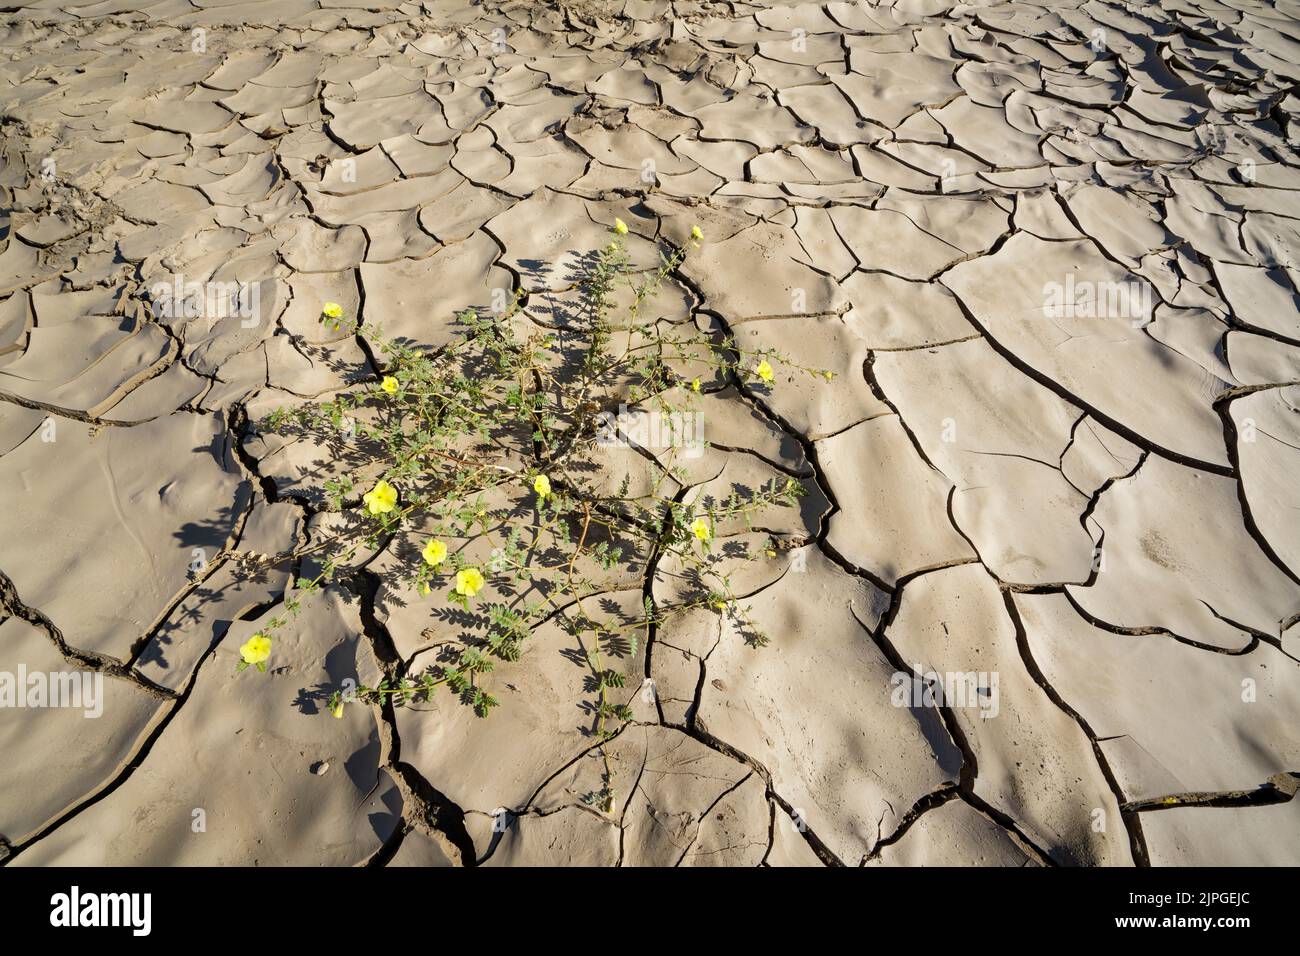 Symbolische Foto, Hoffnung, Umwelt, gelbe Blume steht in trockenen Flussbett Muster. Swakop River, Namibia, Afrika Stockfoto